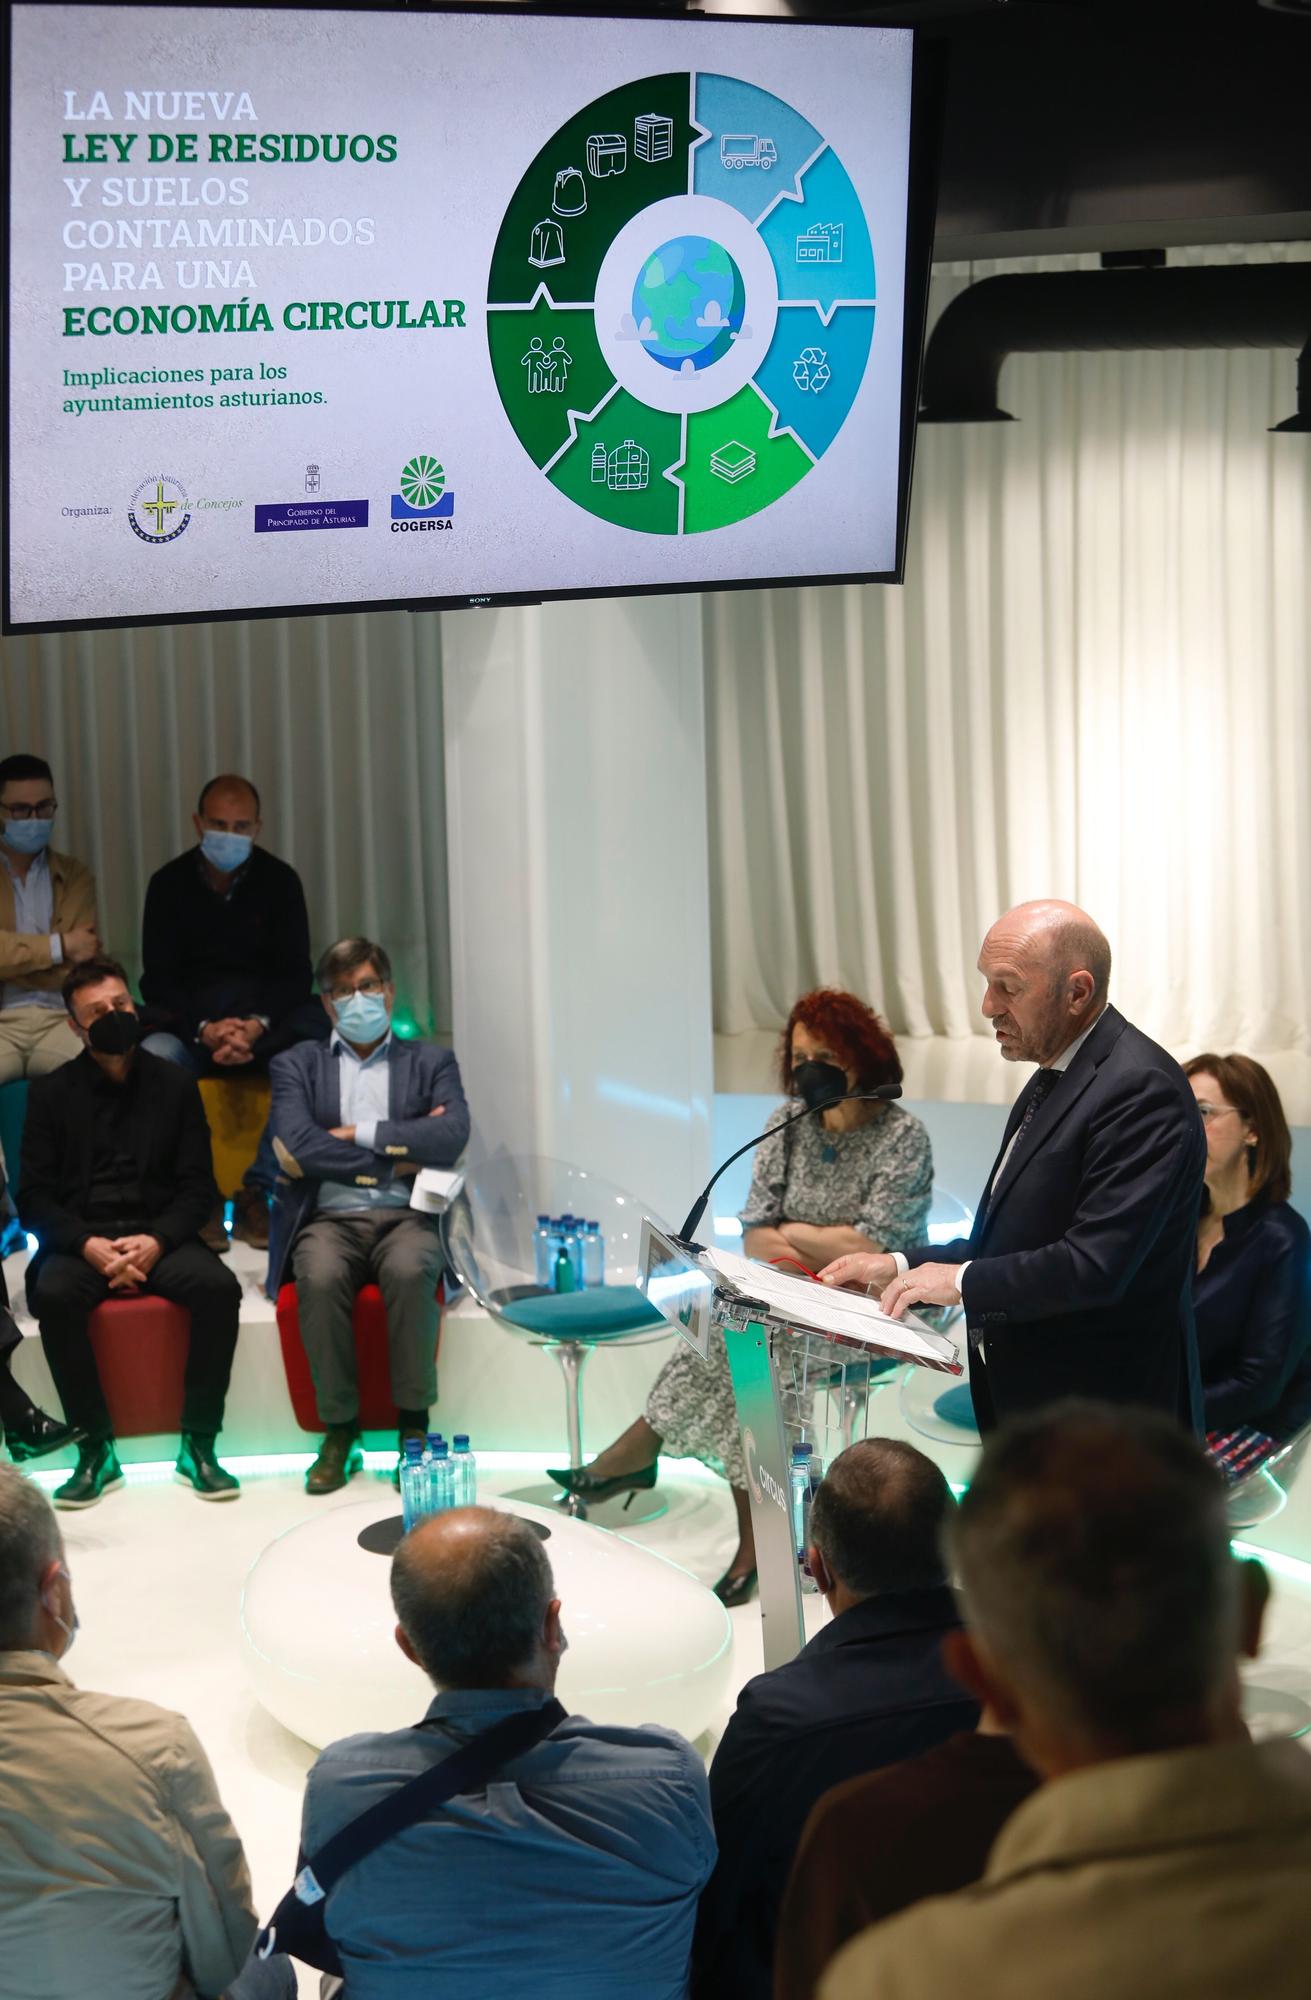 La nueva Ley de Residuos y Suelos Contaminados fue objeto de debate en el encuentro organizado por Cogersaa